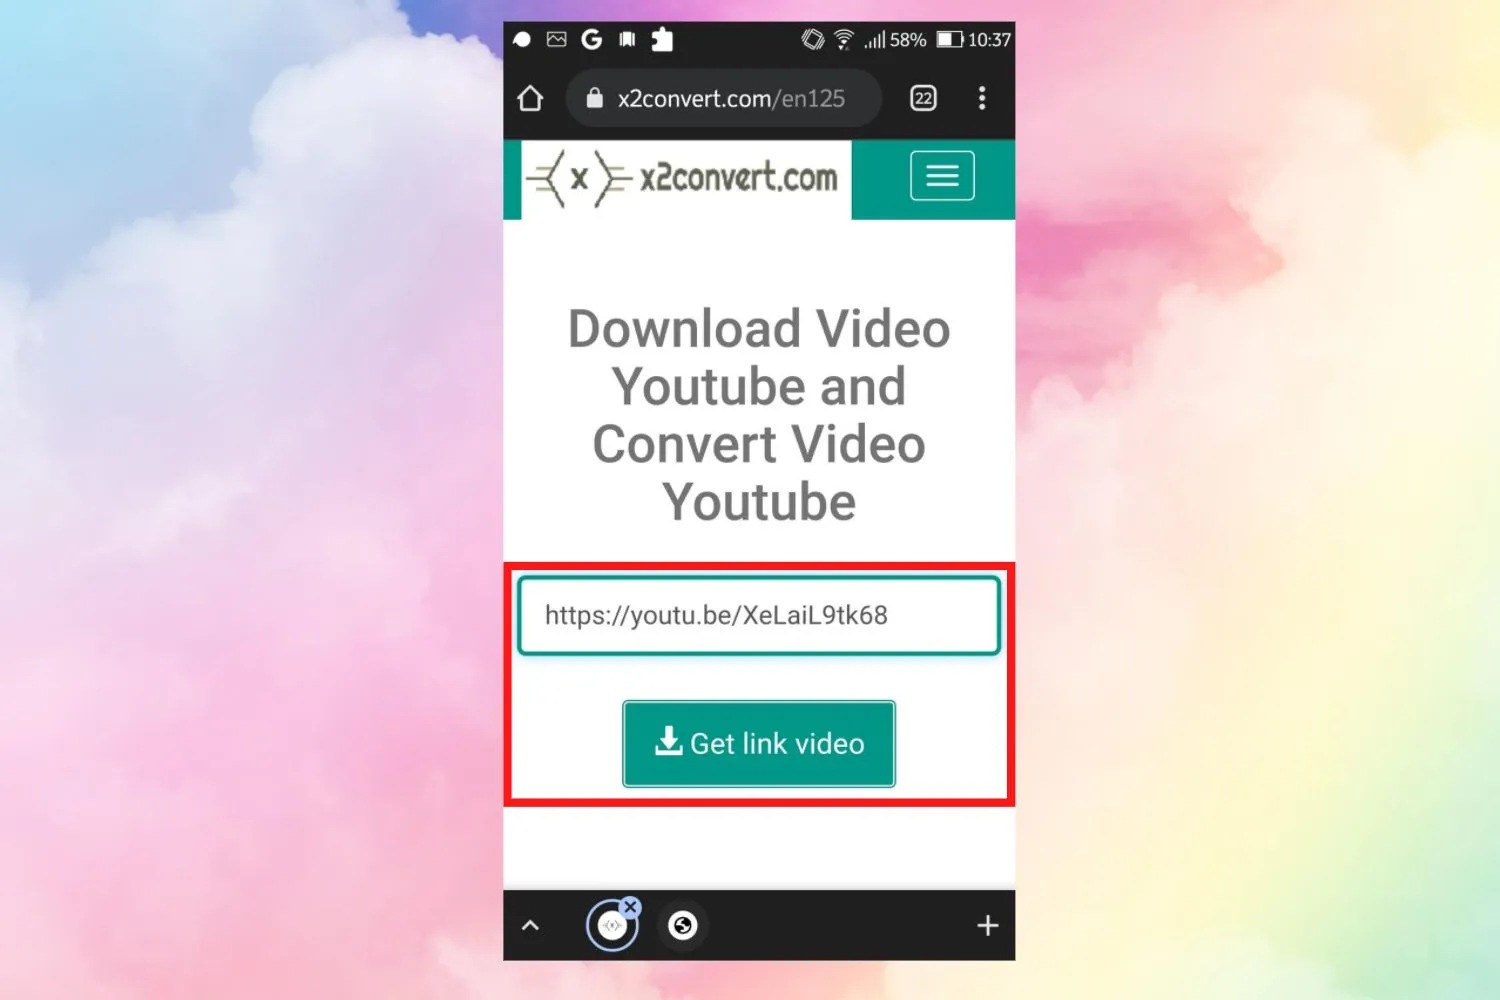 Sforum - Trang thông tin công nghệ mới nhất 1-56 Cách tải nhạc MP3 từ Youtube về điện thoại Android chỉ trong 1 phút